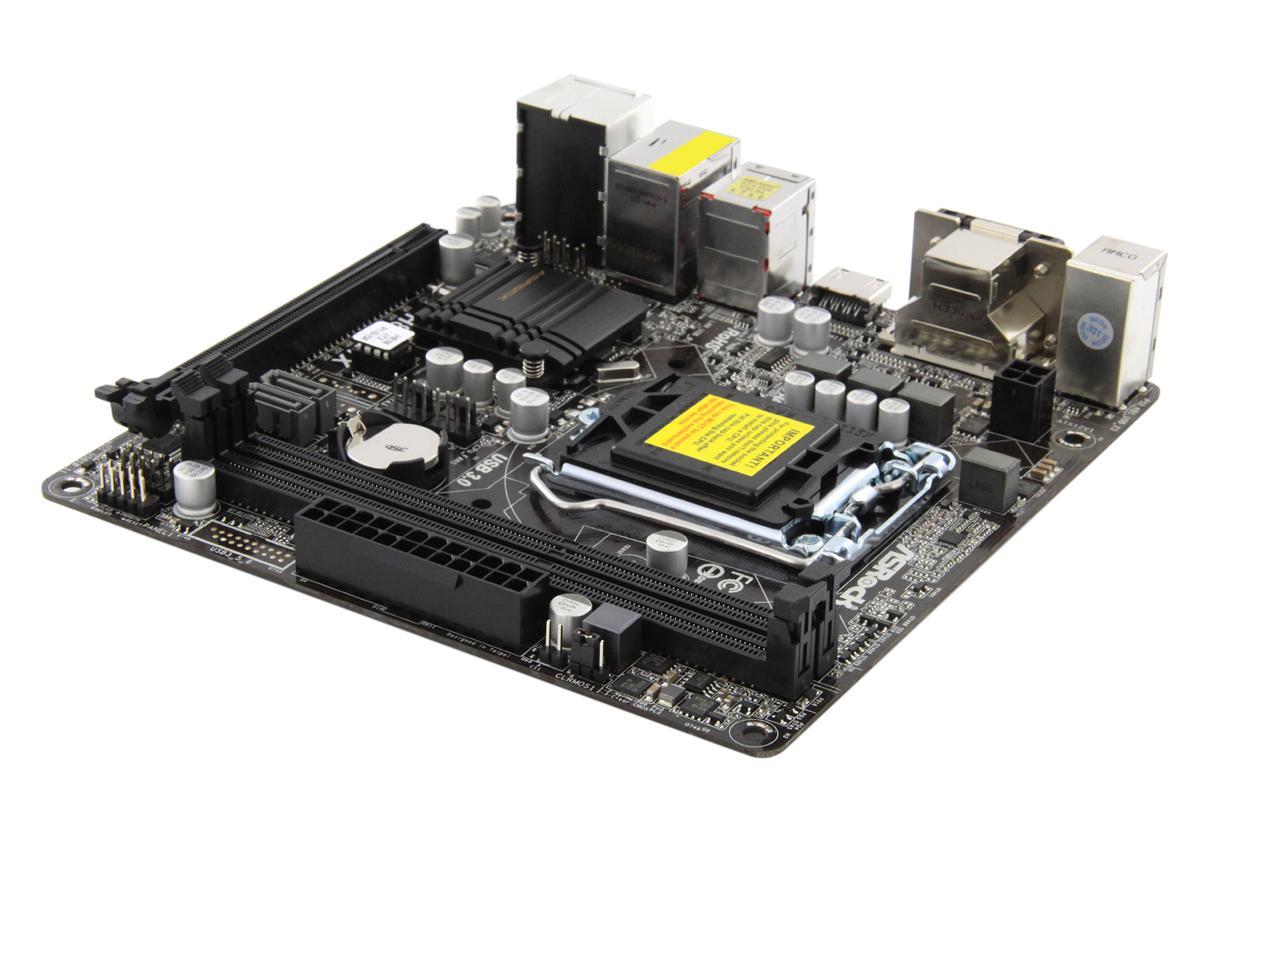 ASRock H81M-ITX LGA 1150 Intel H81 HDMI SATA 6Gb/s USB 3.0 Mini ITX Intel  Motherboard